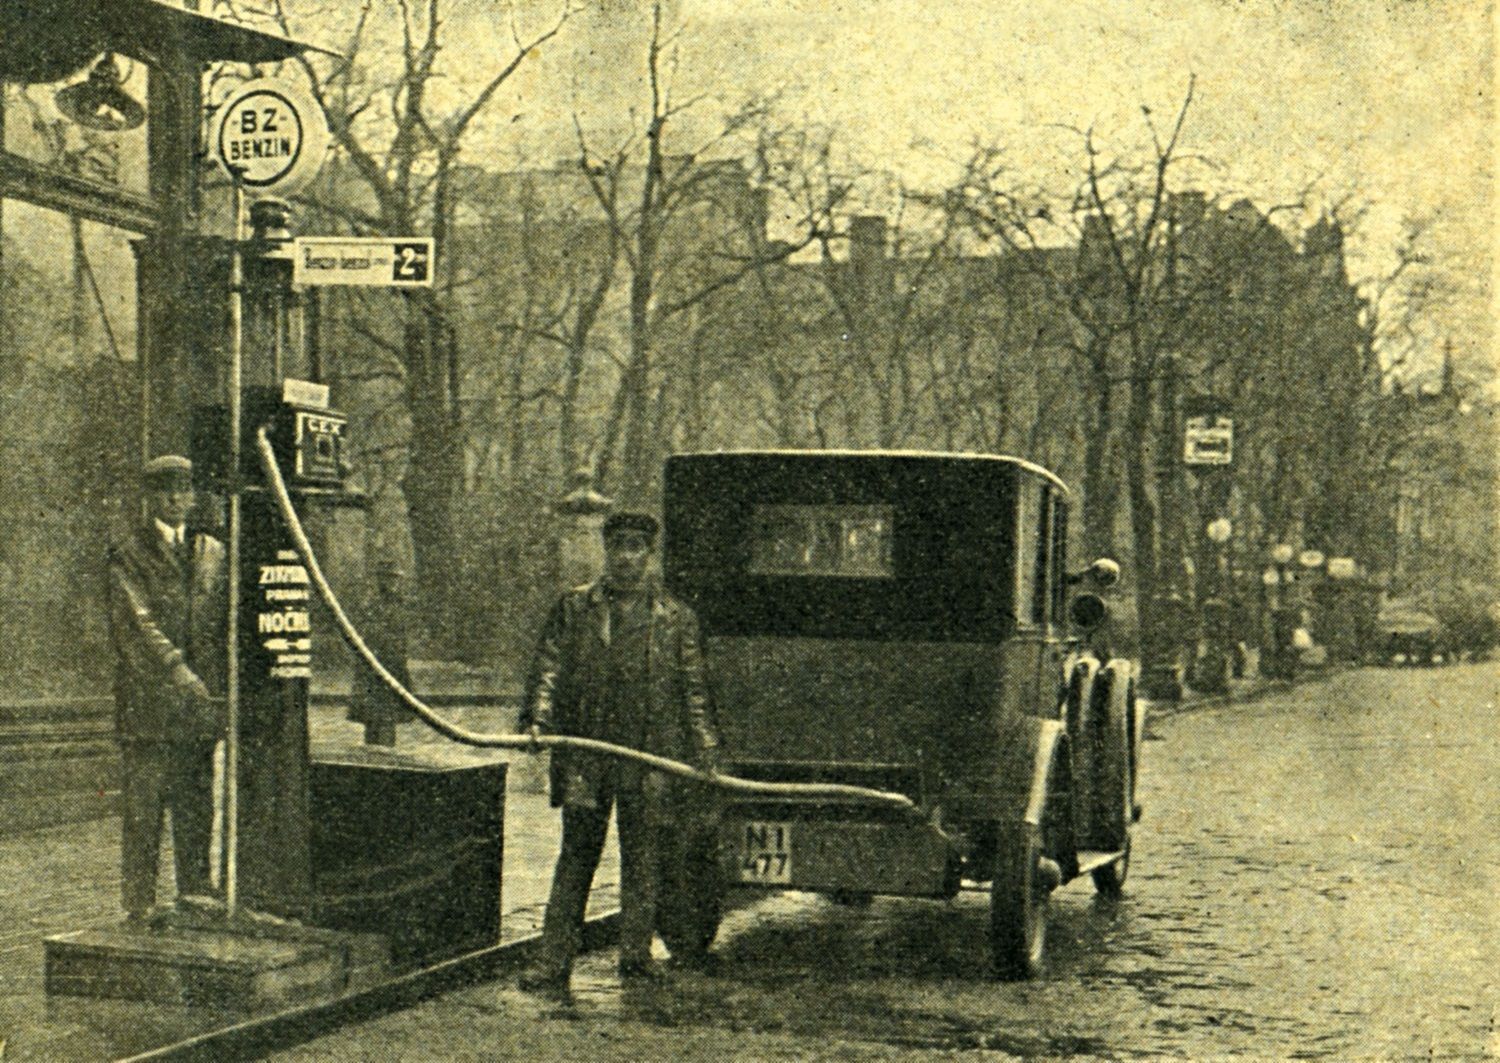 Benzina čerpací stanice pumpa benzin